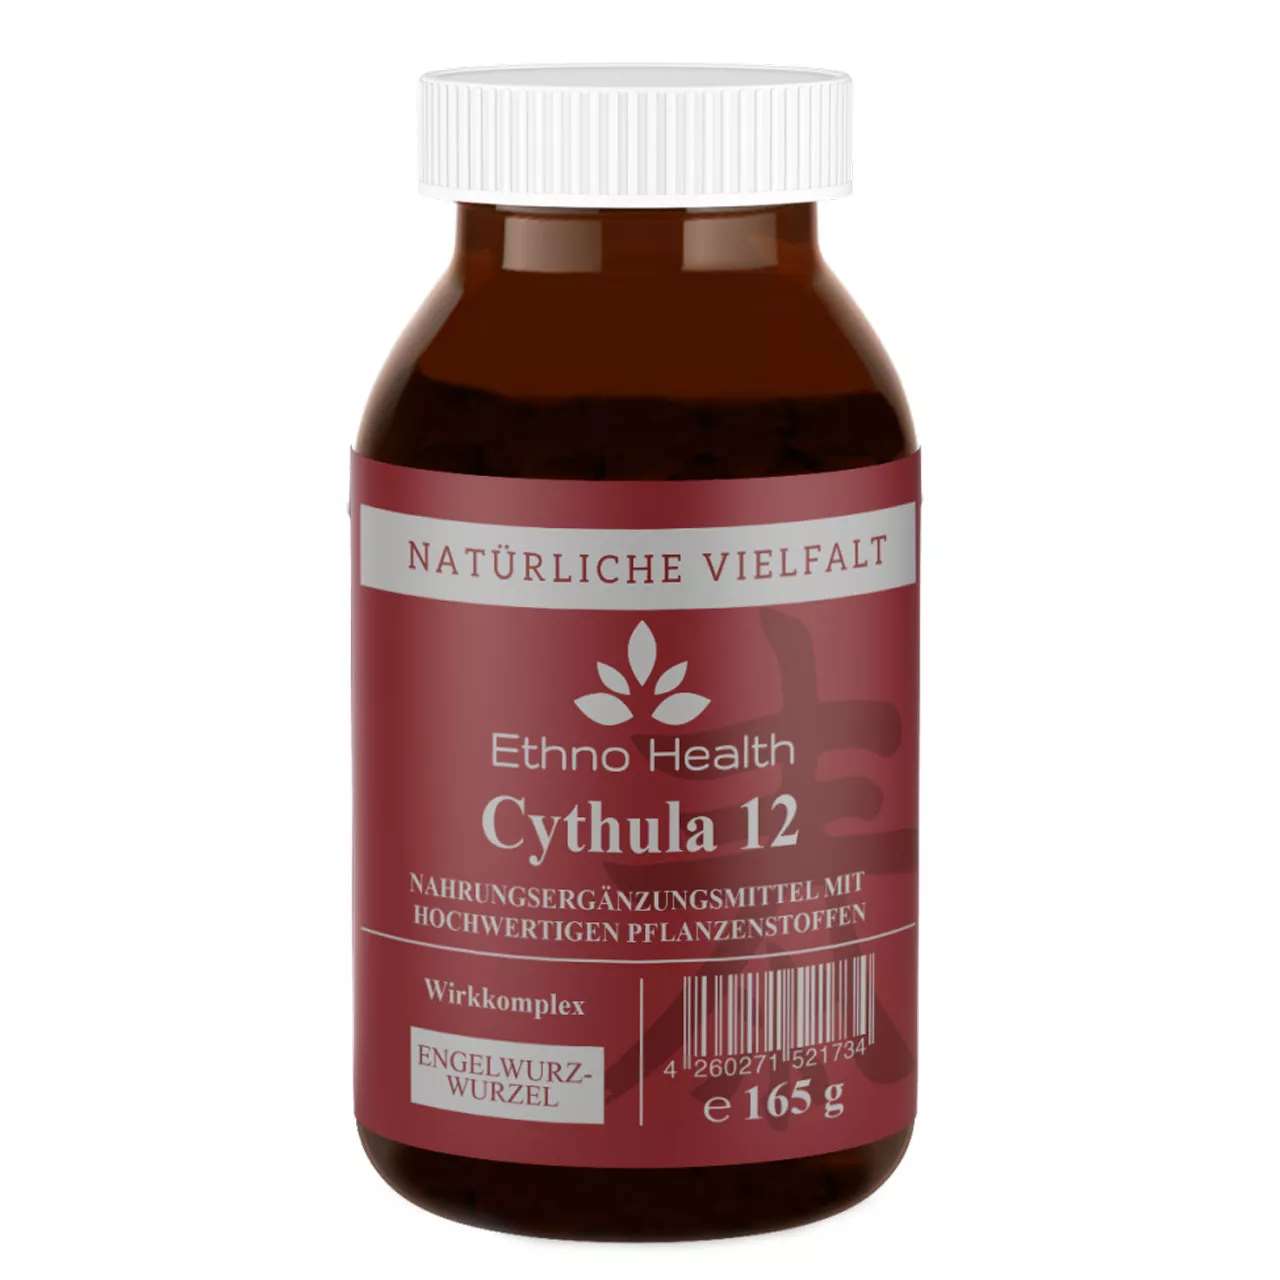 Cythula 12 Pulver von Ethno Health beinhaltet 165 Gramm